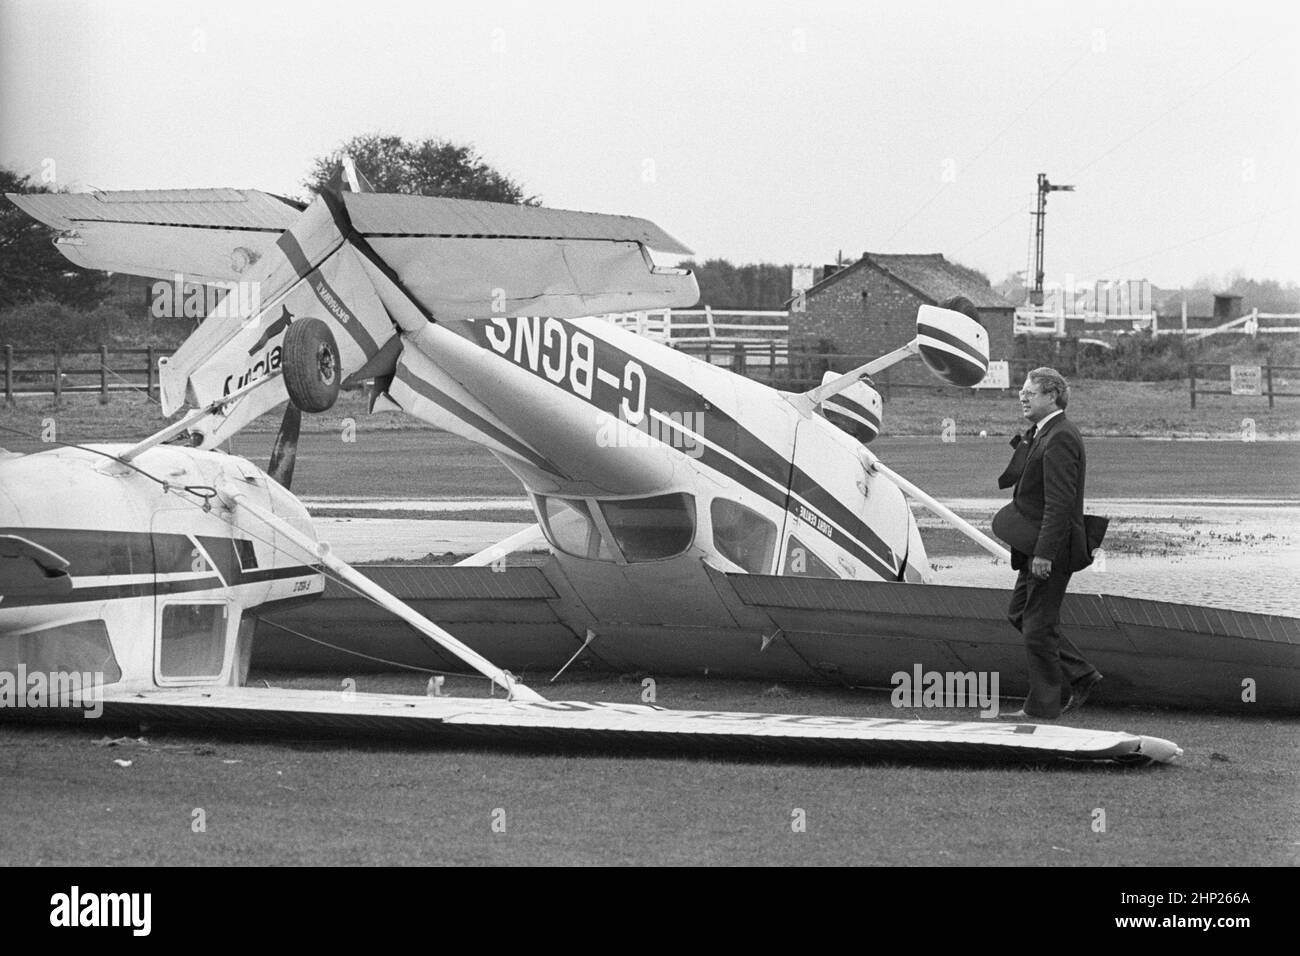 Foto di archivio datata 16/10/1987 di due dei 27 aerei leggeri dell'aeroporto di Shoreham che sono stati danneggiati dopo la Grande tempesta del 1987. Data di emissione: Venerdì 18 febbraio 2022. Foto Stock